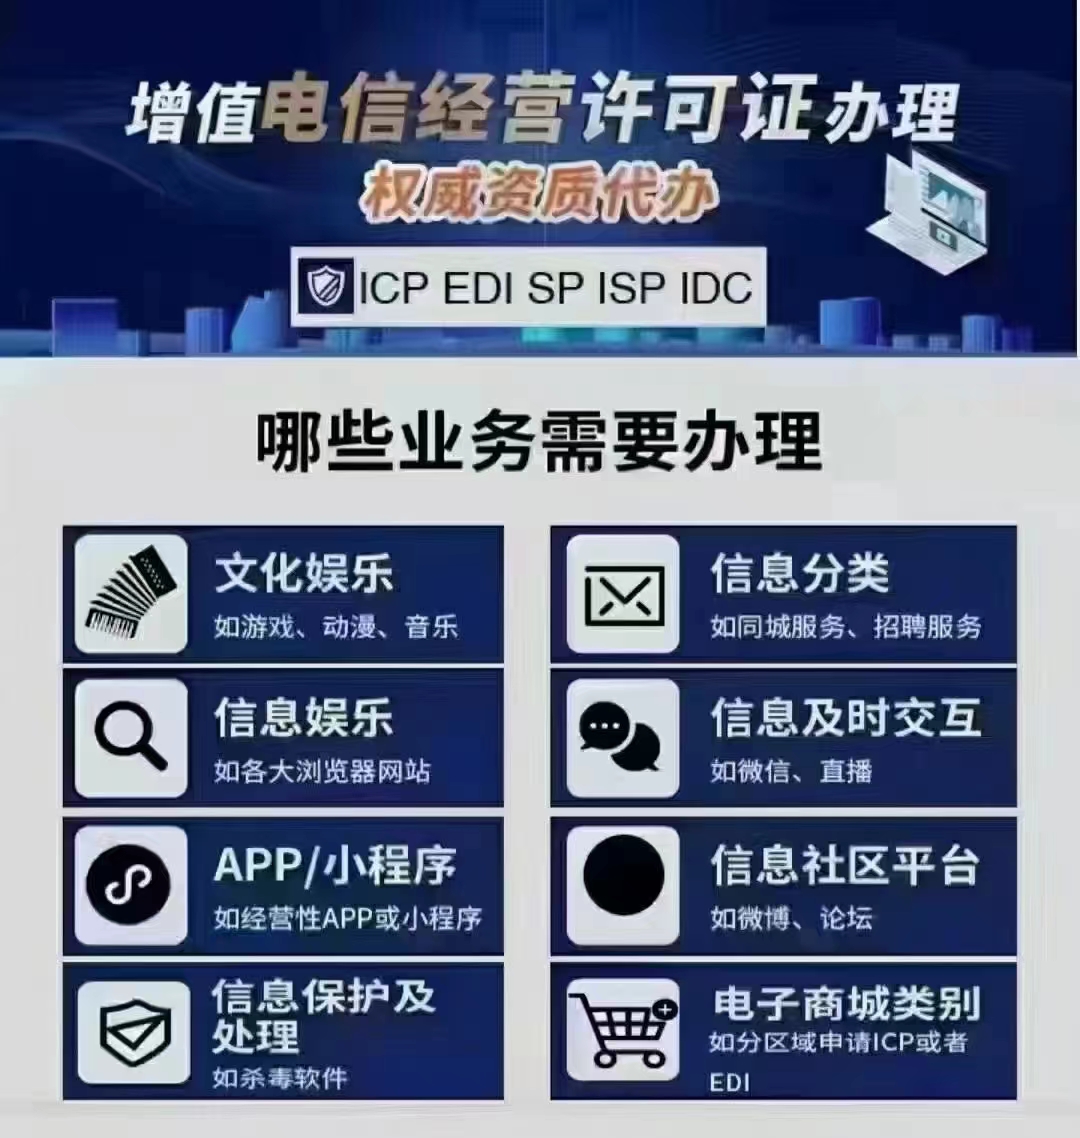 我是北京的公司涉及哪些业务需要办理ICP经营许可证